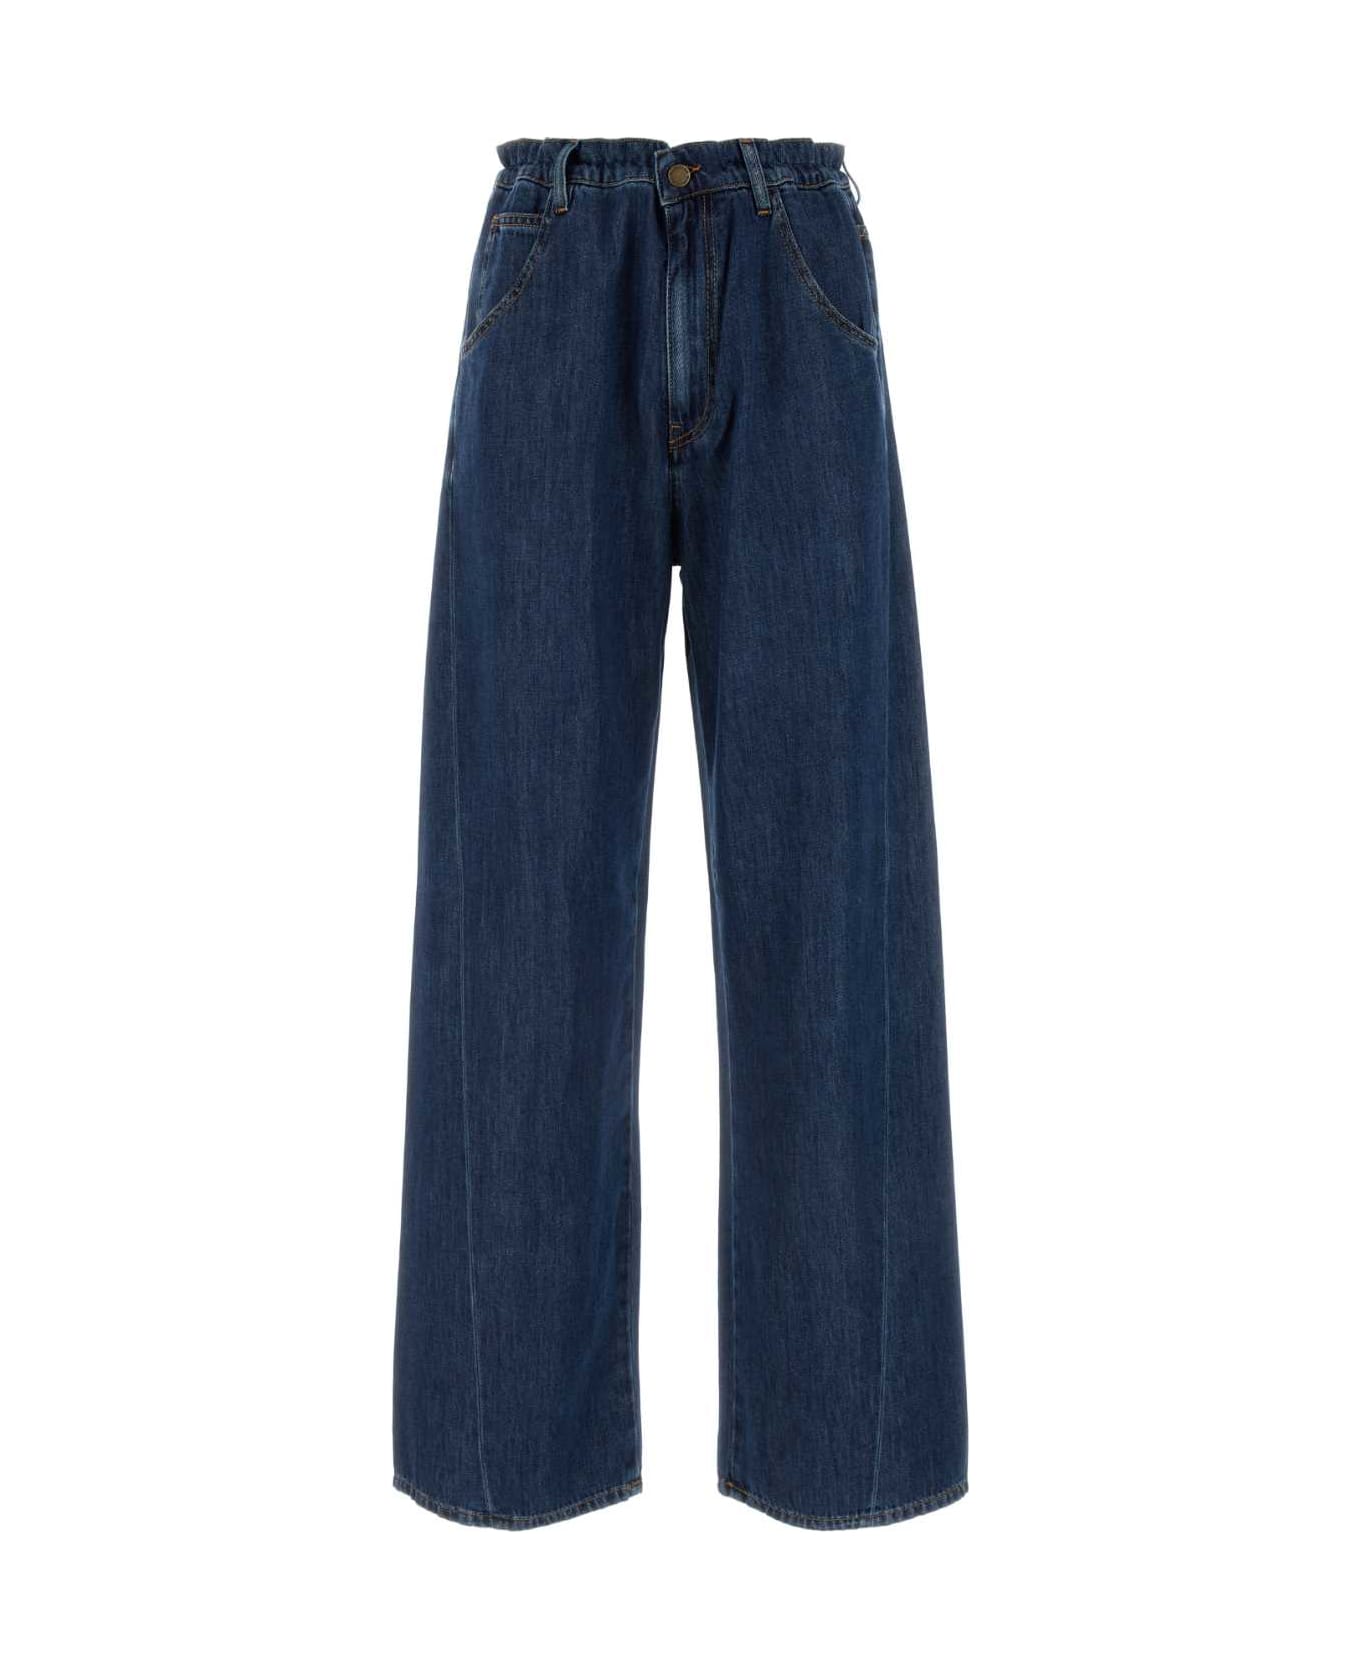 DARKPARK Denim Iris Wide-leg Jeans - MEDIUMWASH デニム